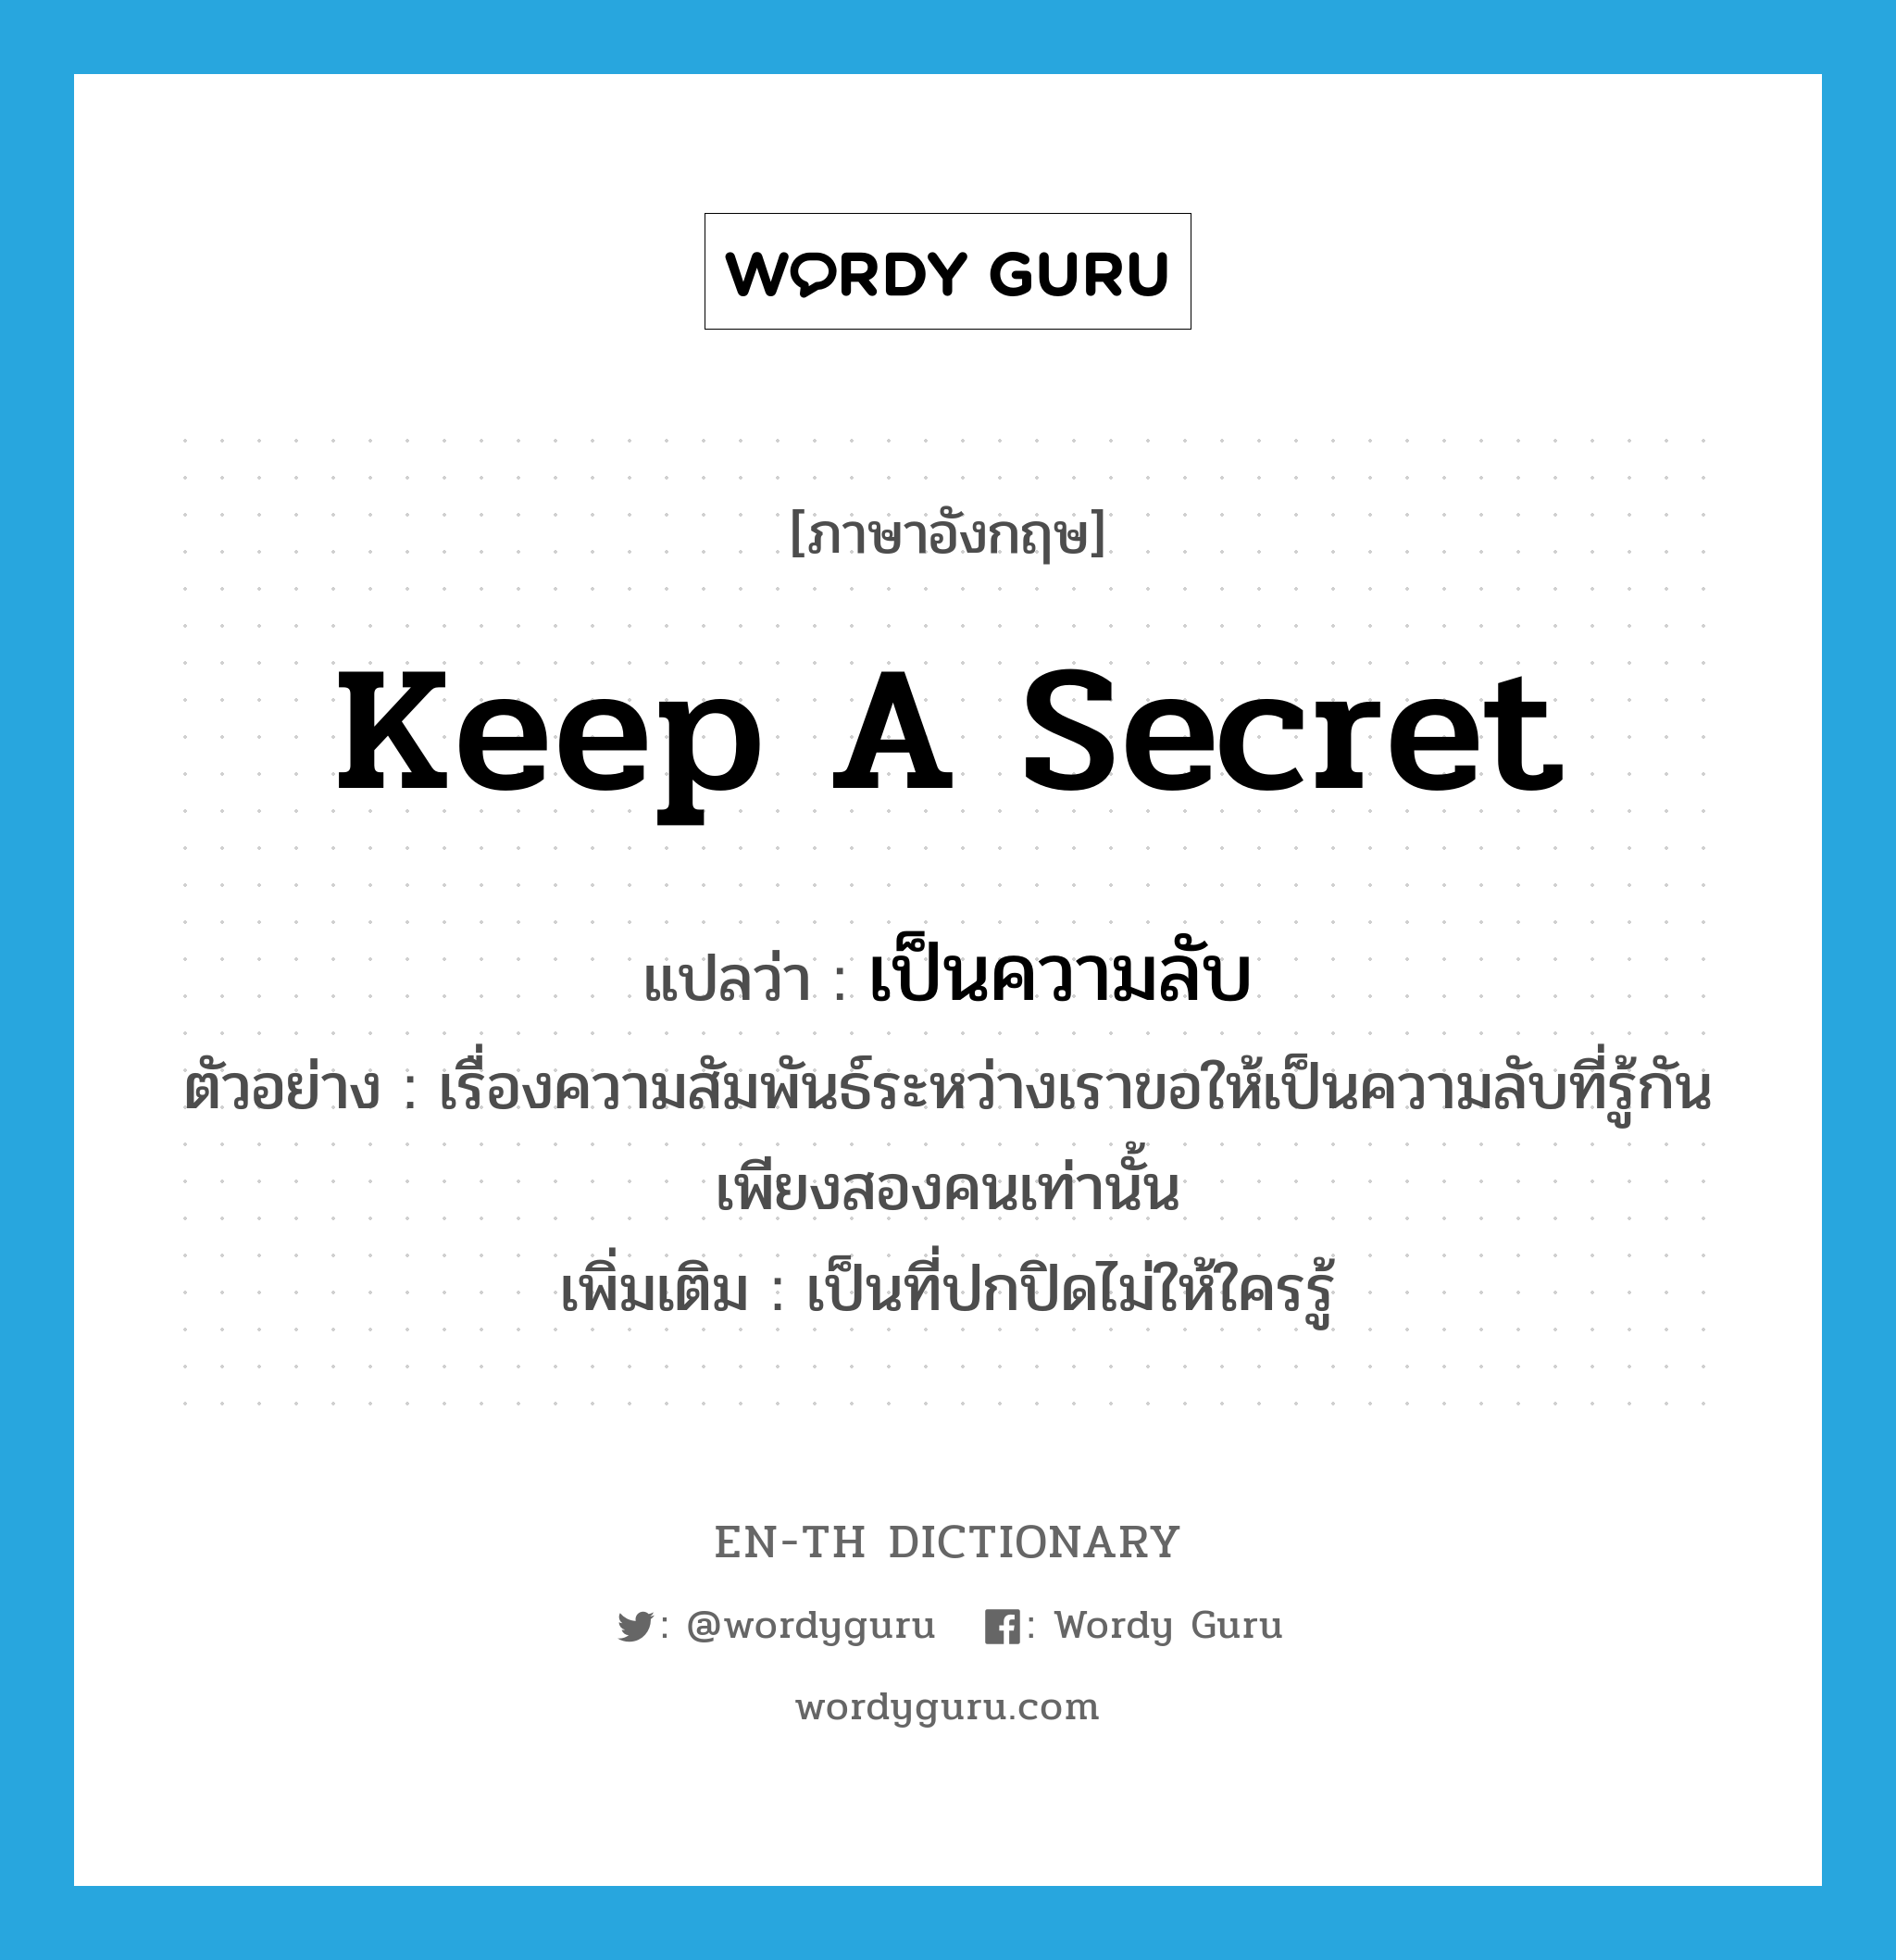 keep a secret แปลว่า?, คำศัพท์ภาษาอังกฤษ keep a secret แปลว่า เป็นความลับ ประเภท V ตัวอย่าง เรื่องความสัมพันธ์ระหว่างเราขอให้เป็นความลับที่รู้กันเพียงสองคนเท่านั้น เพิ่มเติม เป็นที่ปกปิดไม่ให้ใครรู้ หมวด V